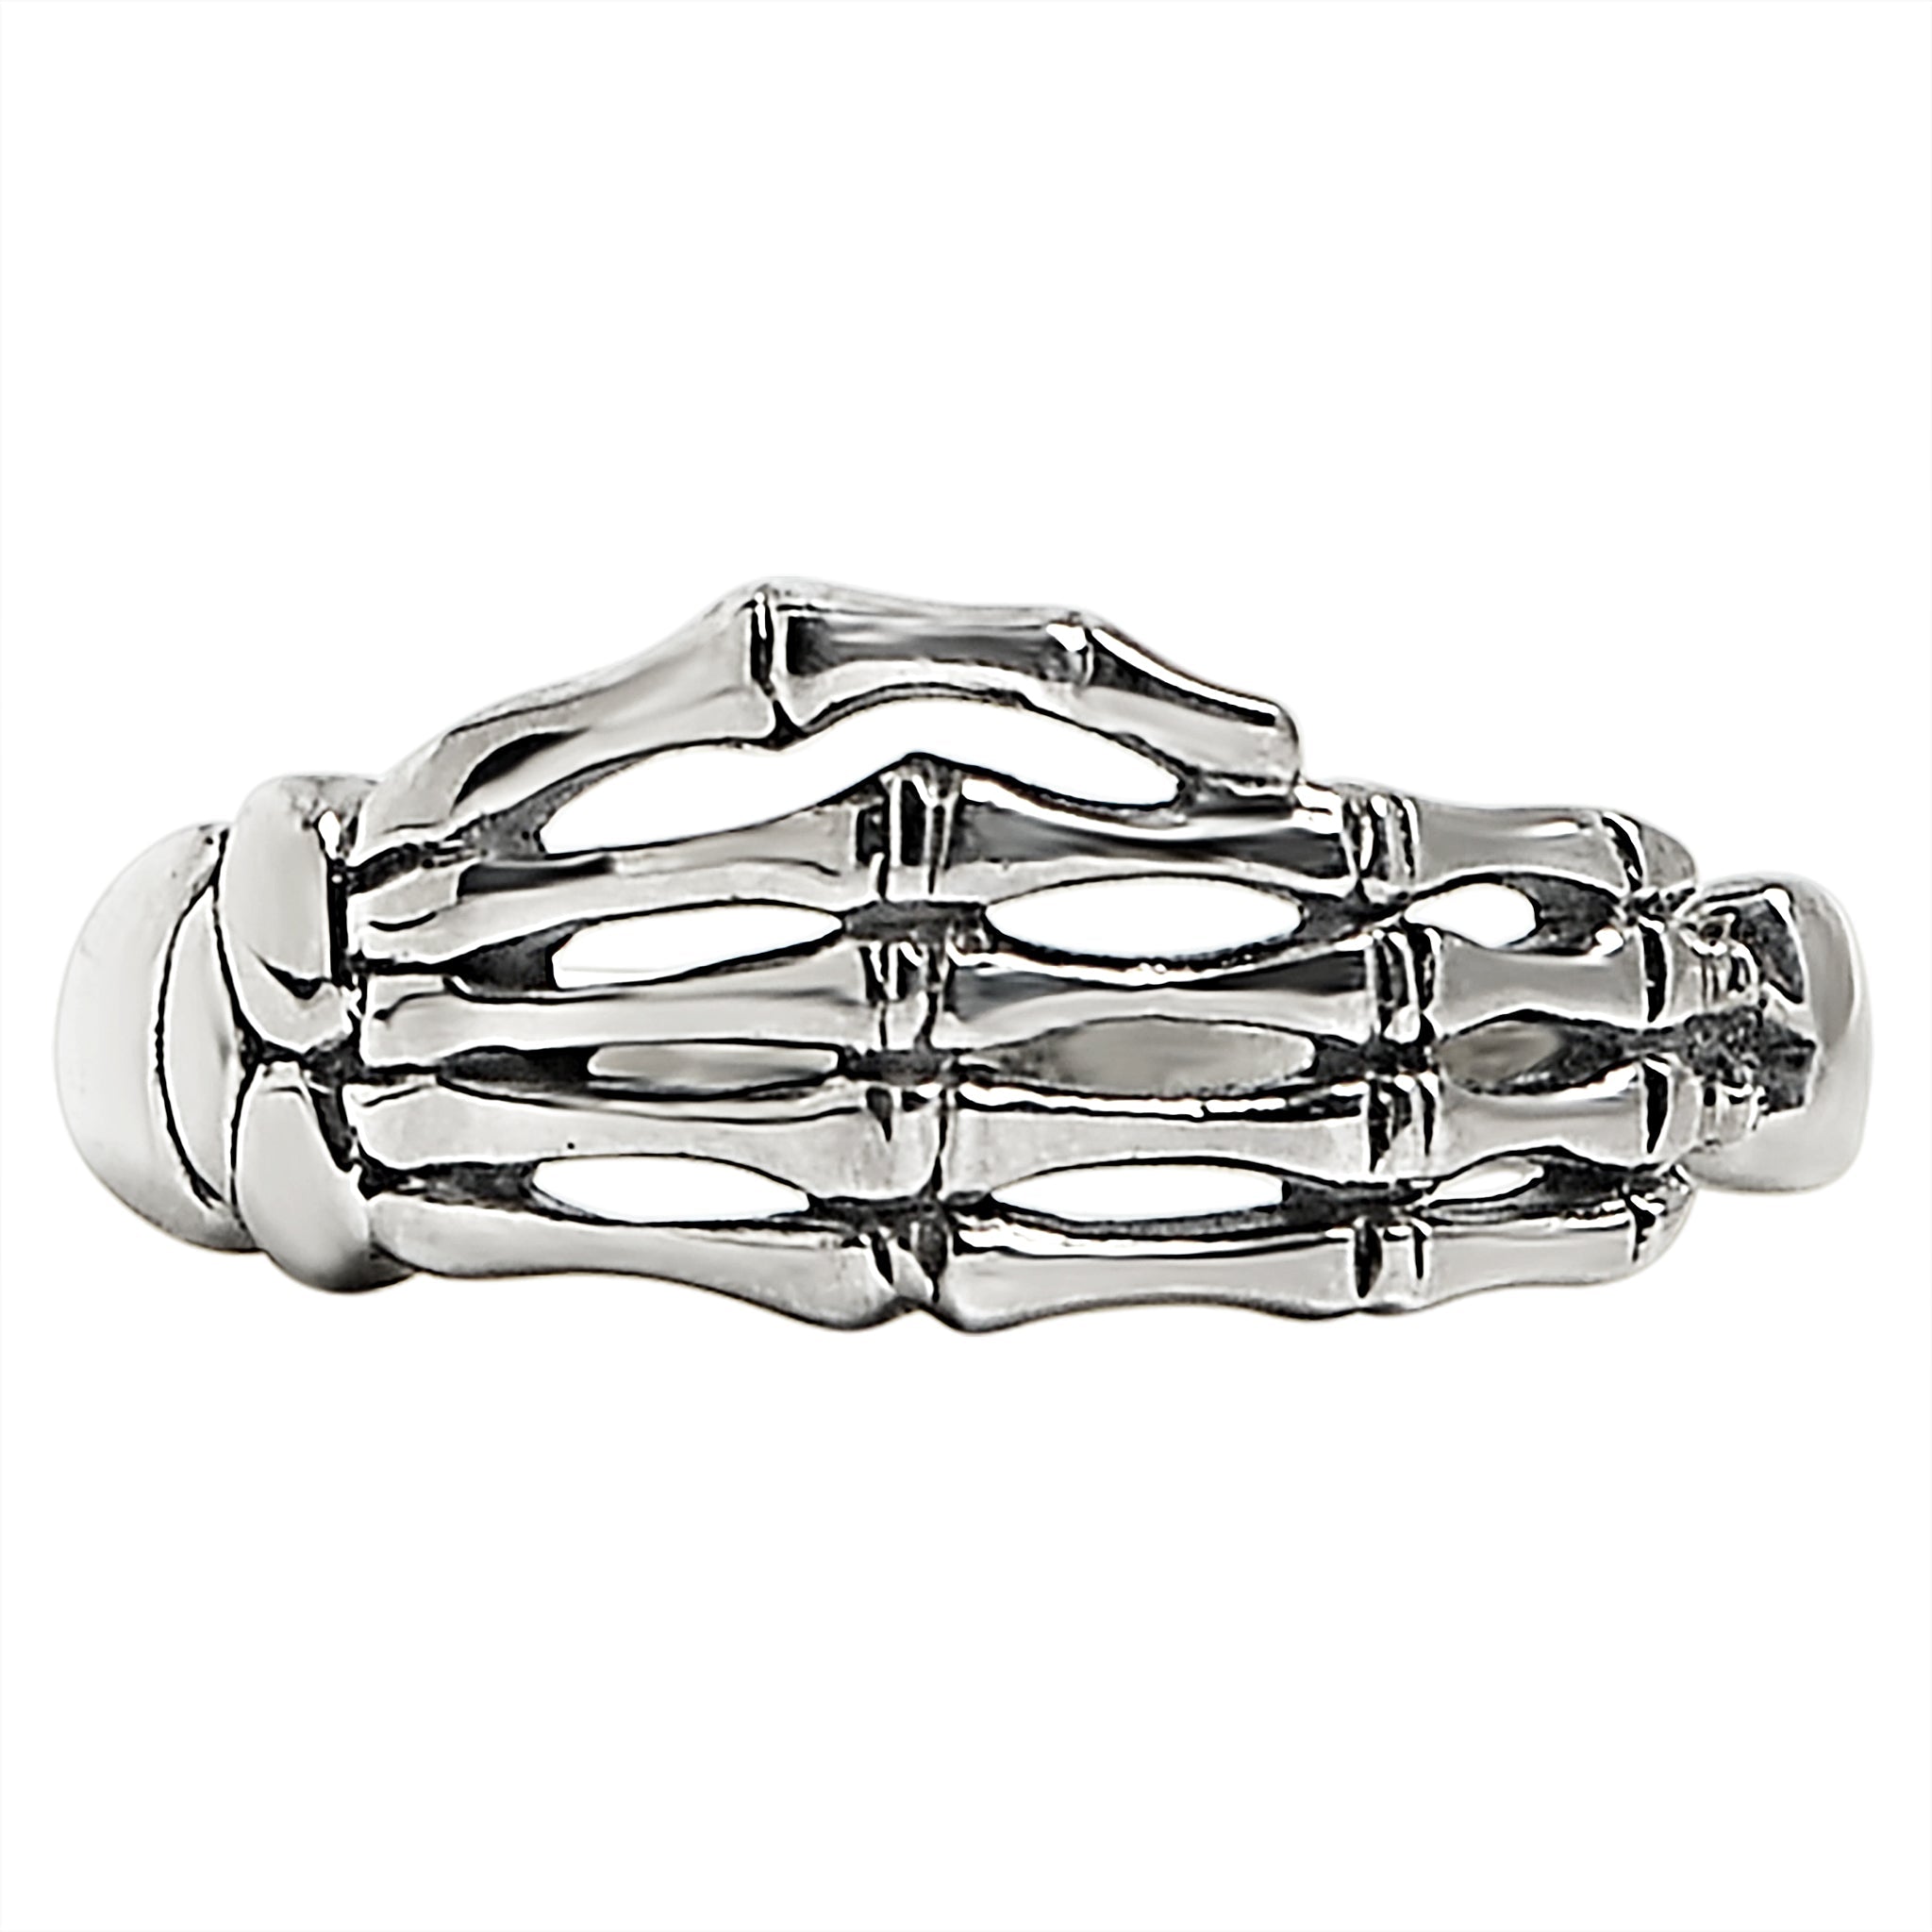 Sterling Silver Skeleton Hand Skull Key Chain